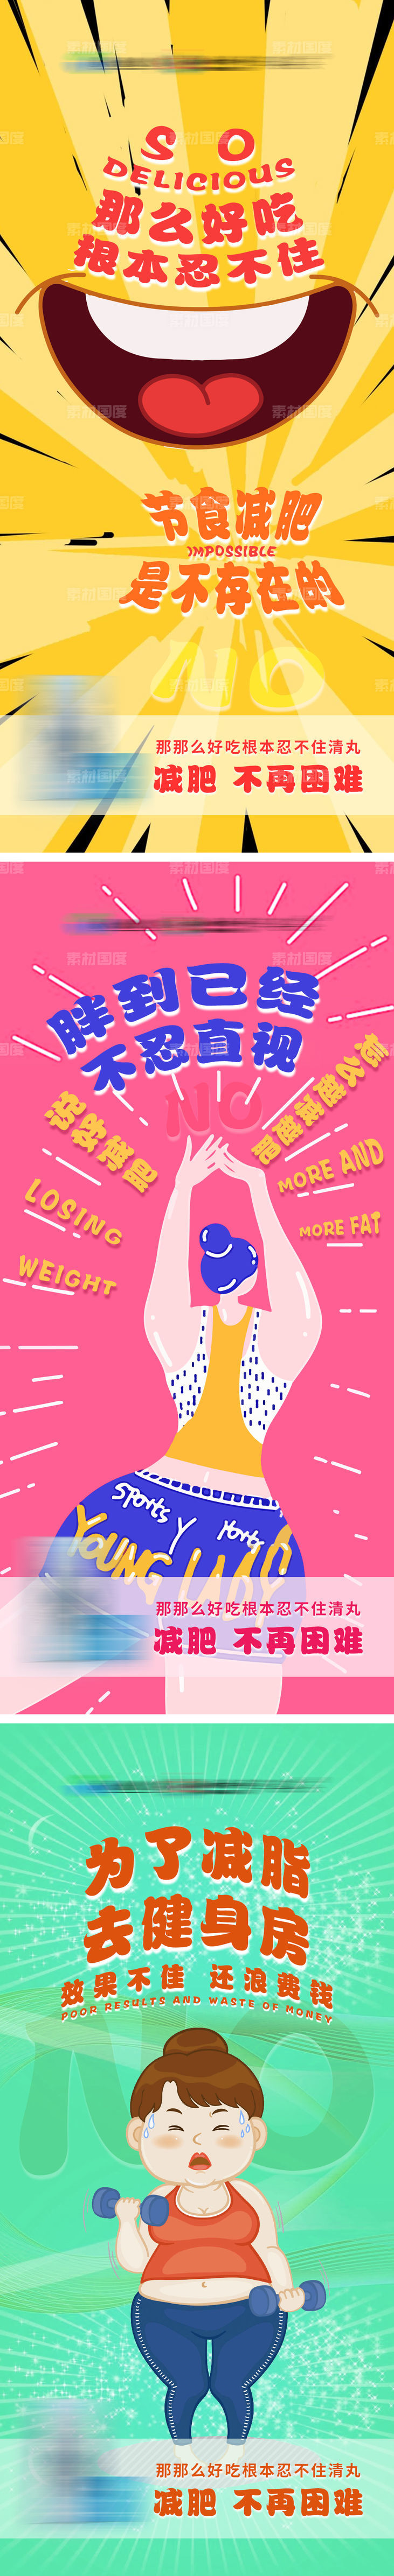 减肥系列海报